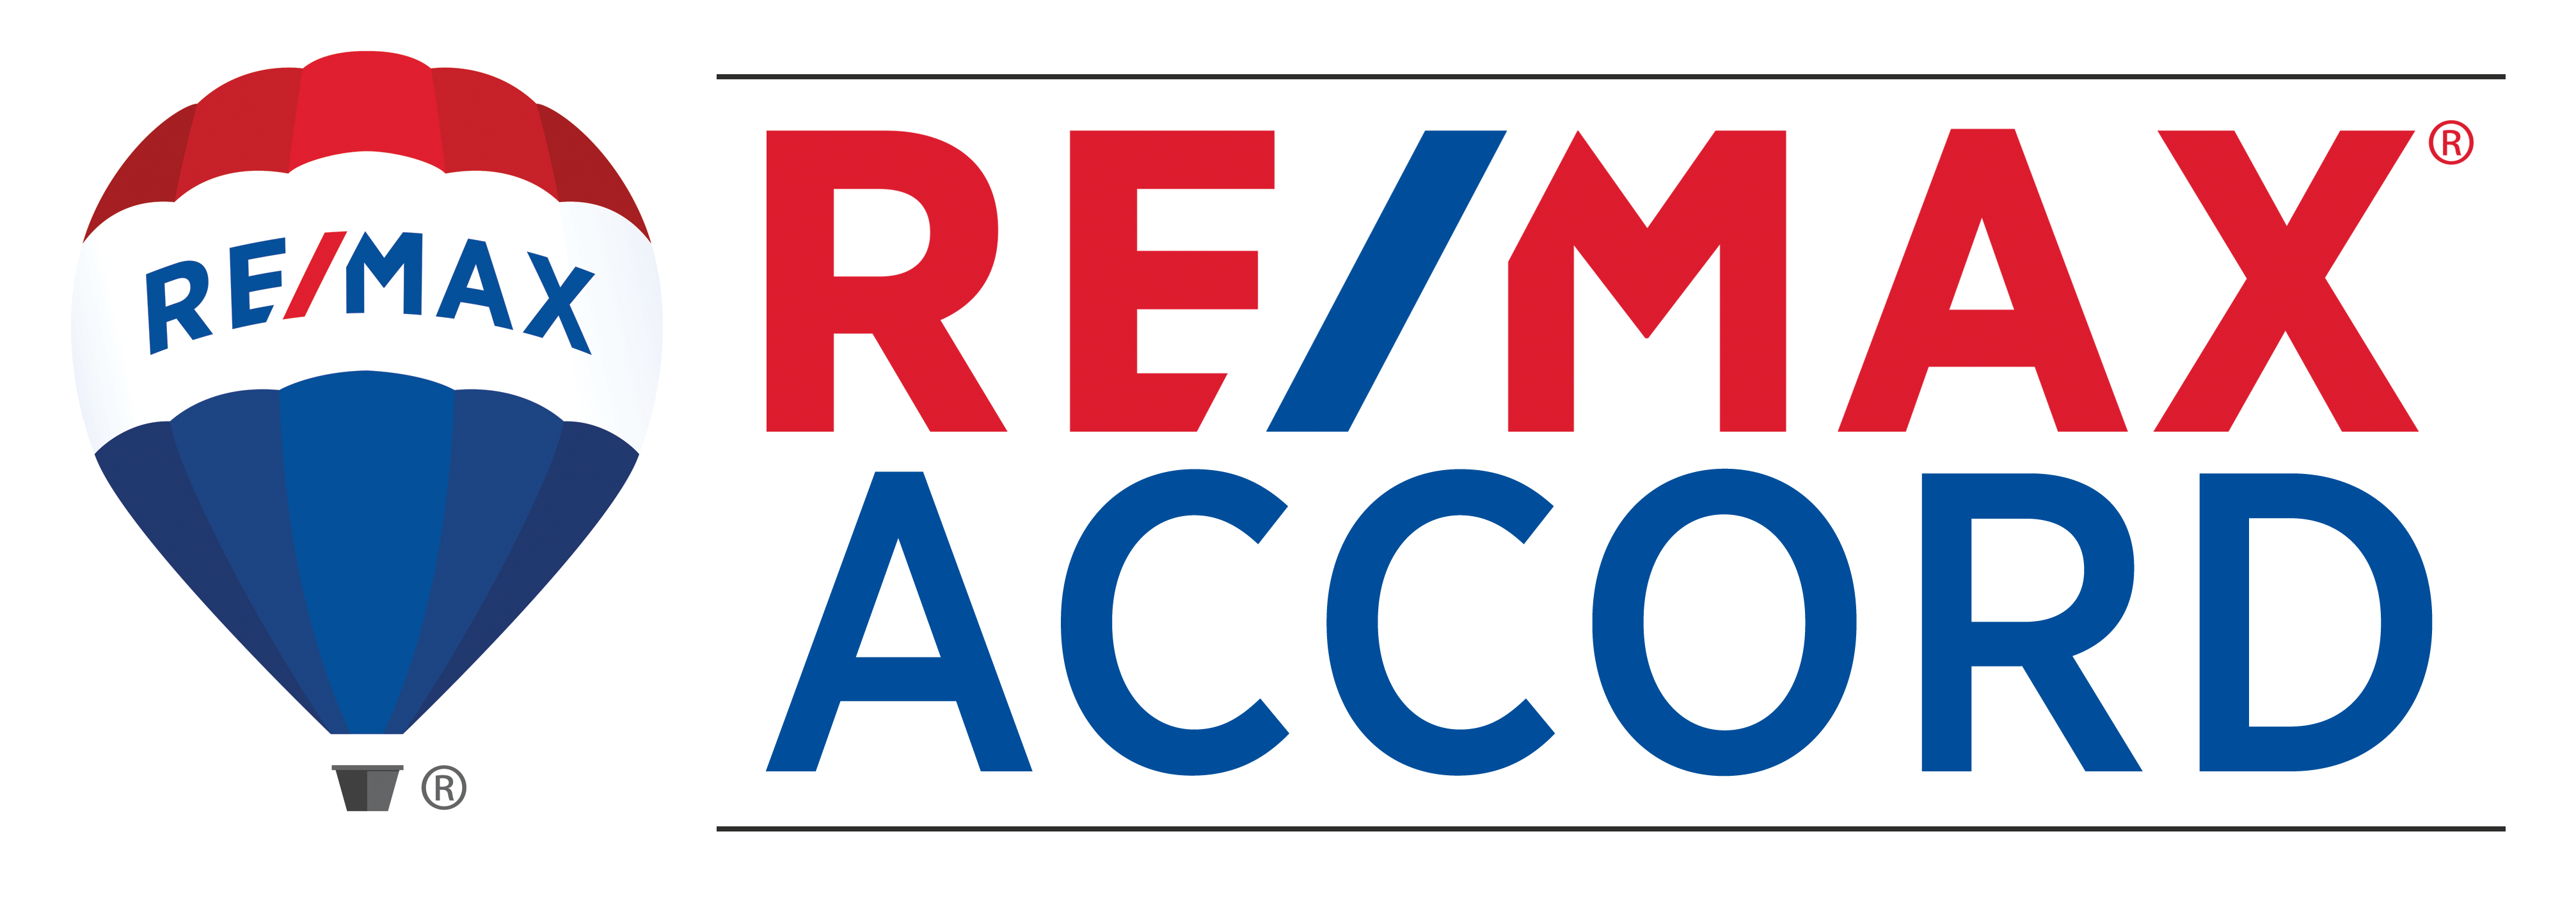 Remax Accord | DRE #01331310